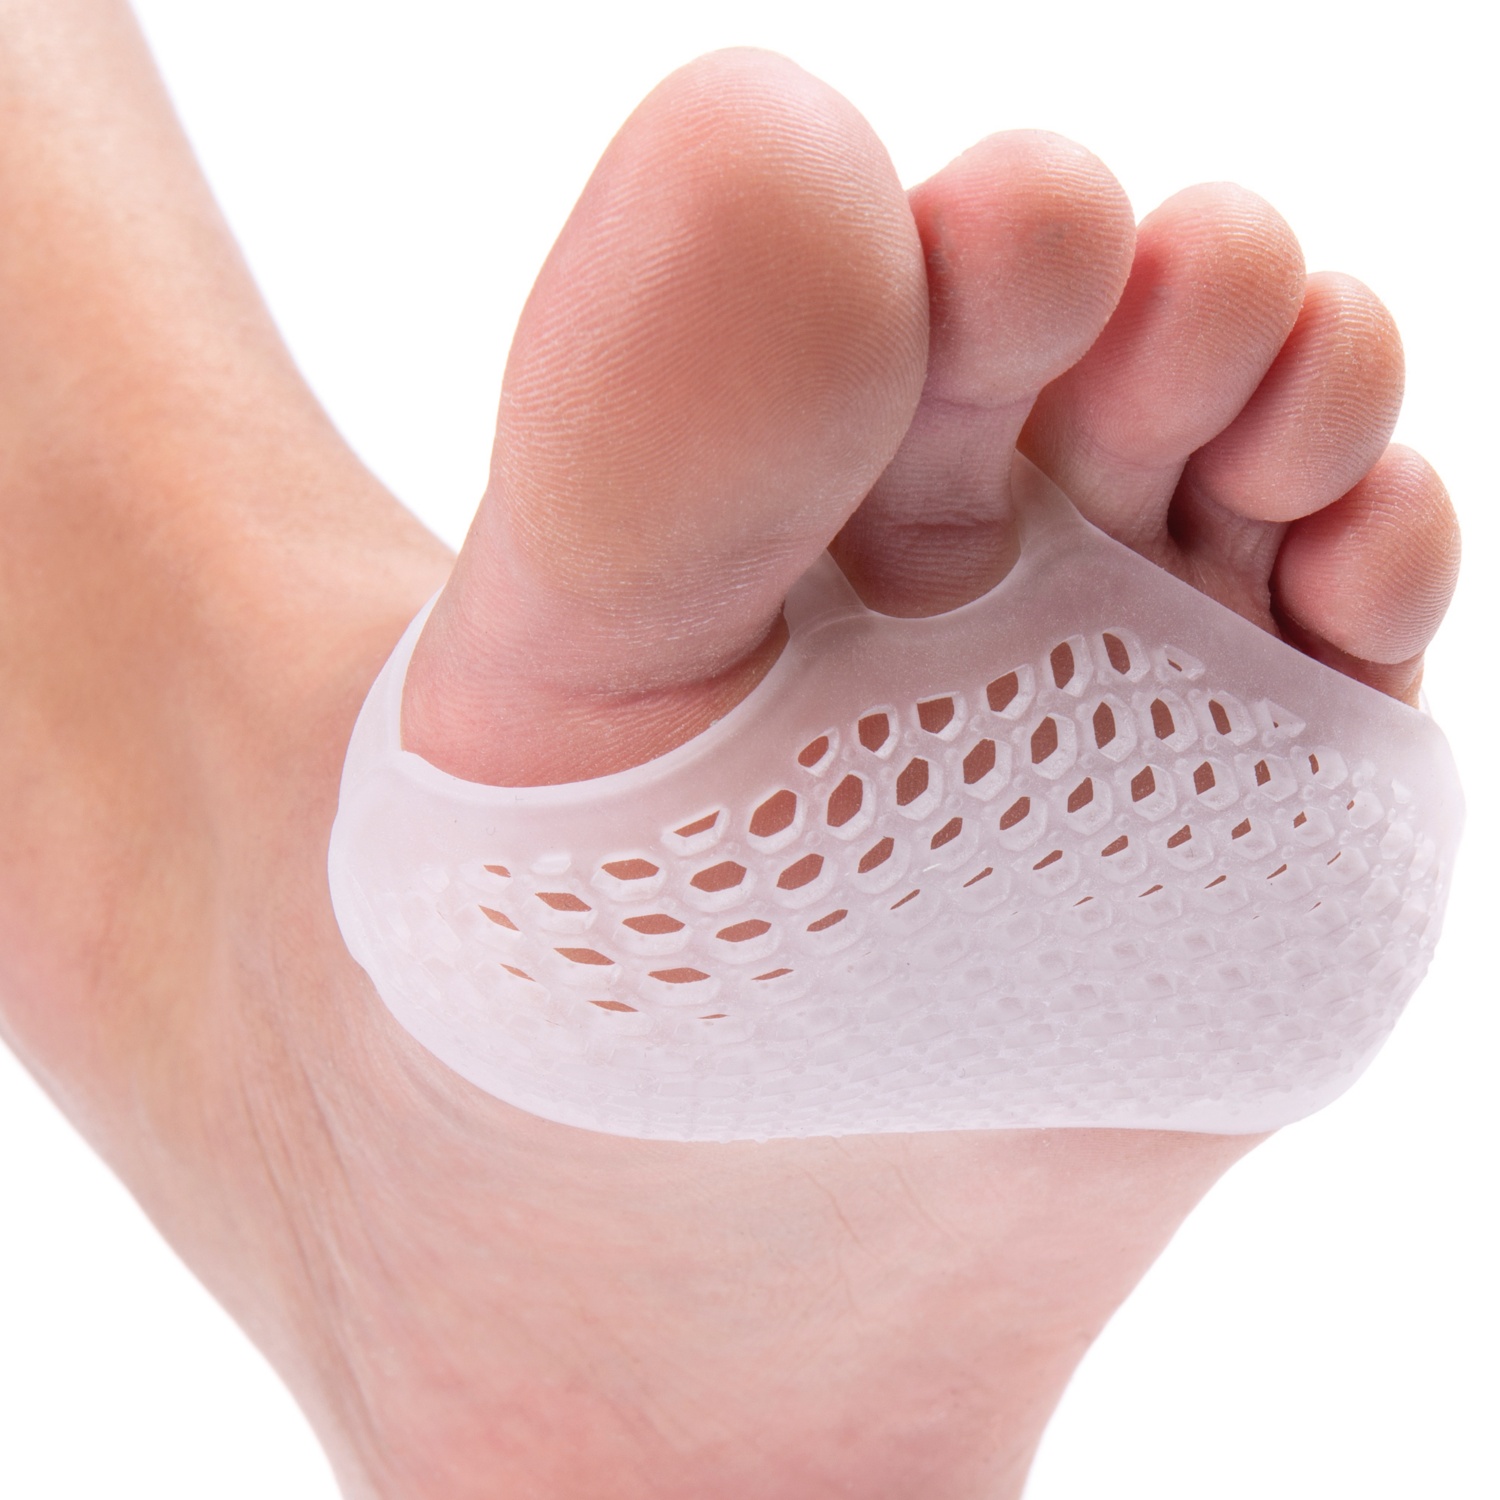 ACTIVE MED Medizinische Fußpflege